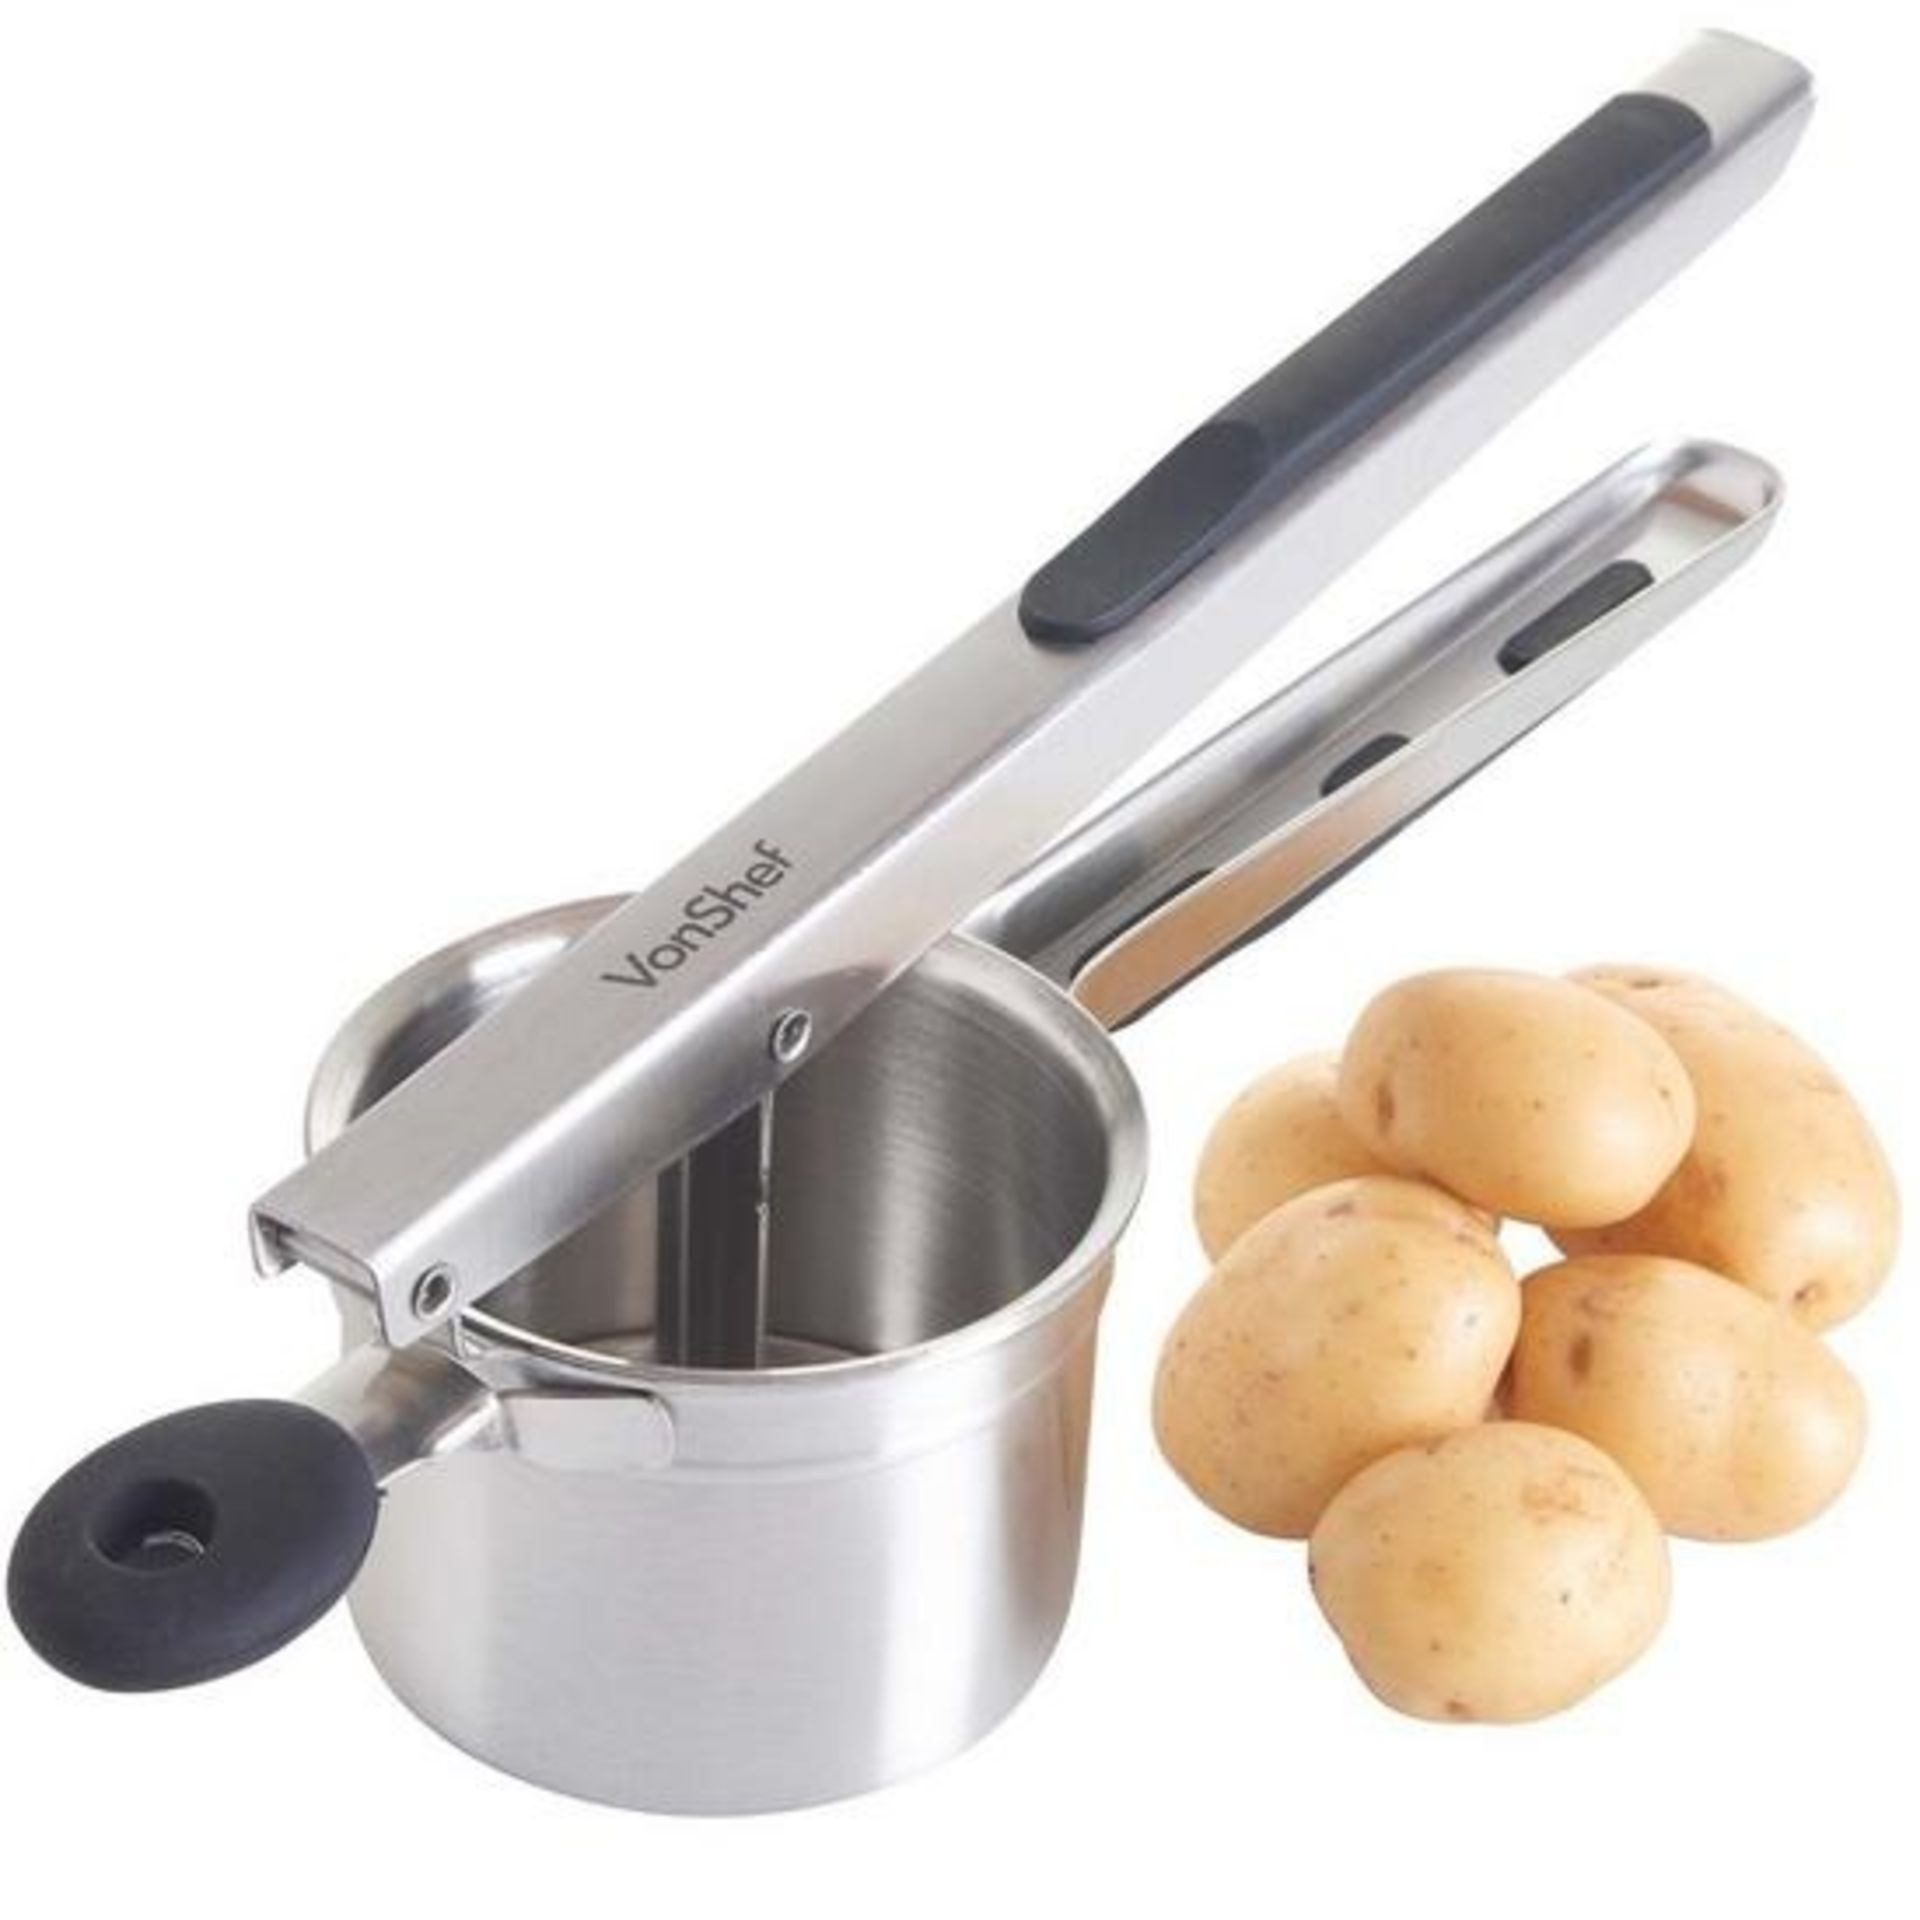 Soft-Grip Stainless-Steel Potato Ricer Masher - ER38